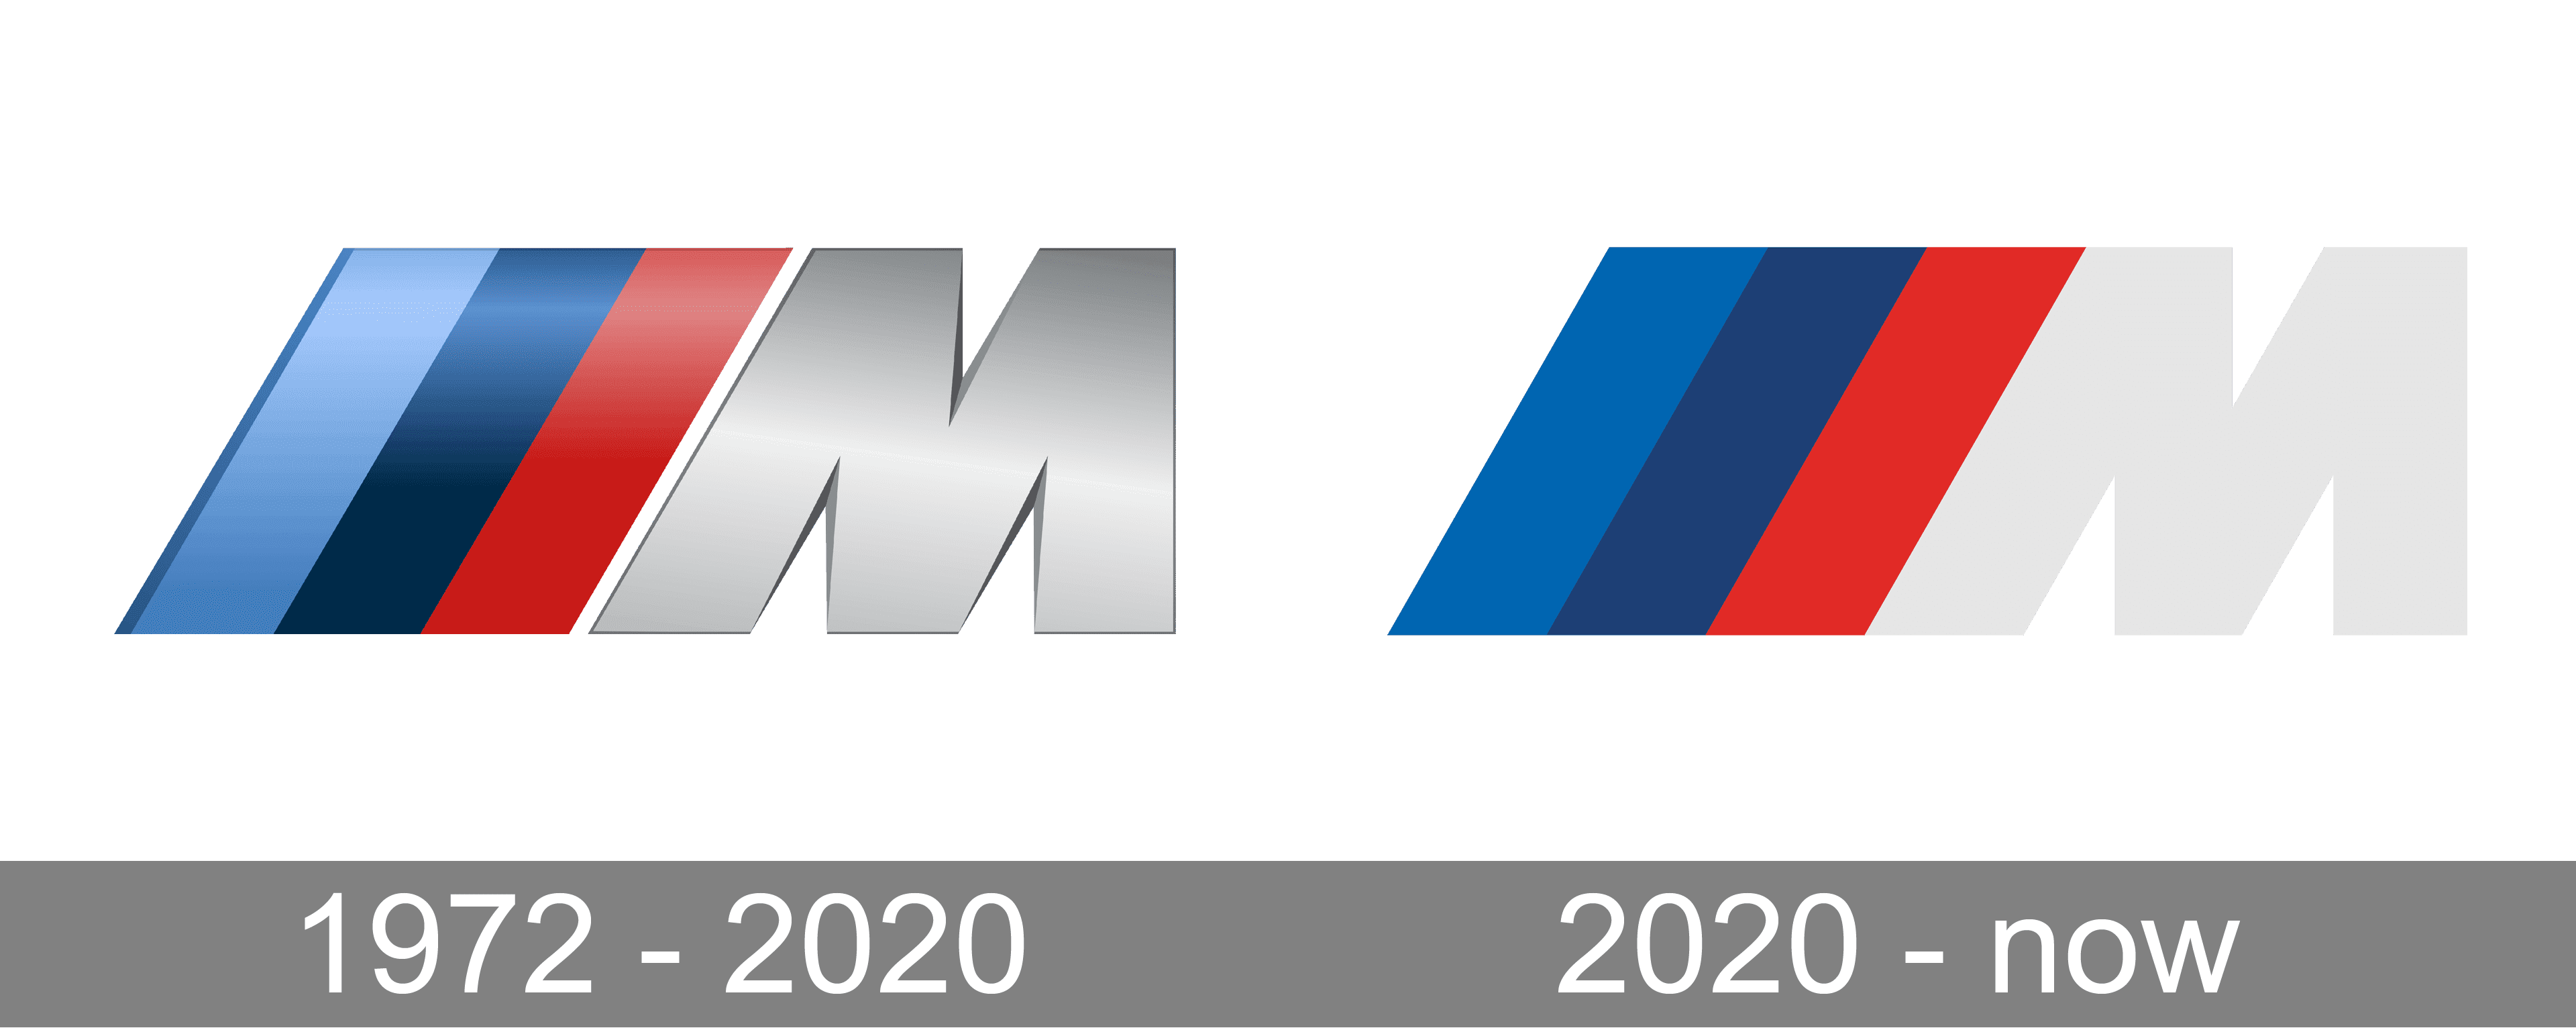 BMW logo history | Bmw logo, Bmw, Bmw symbol